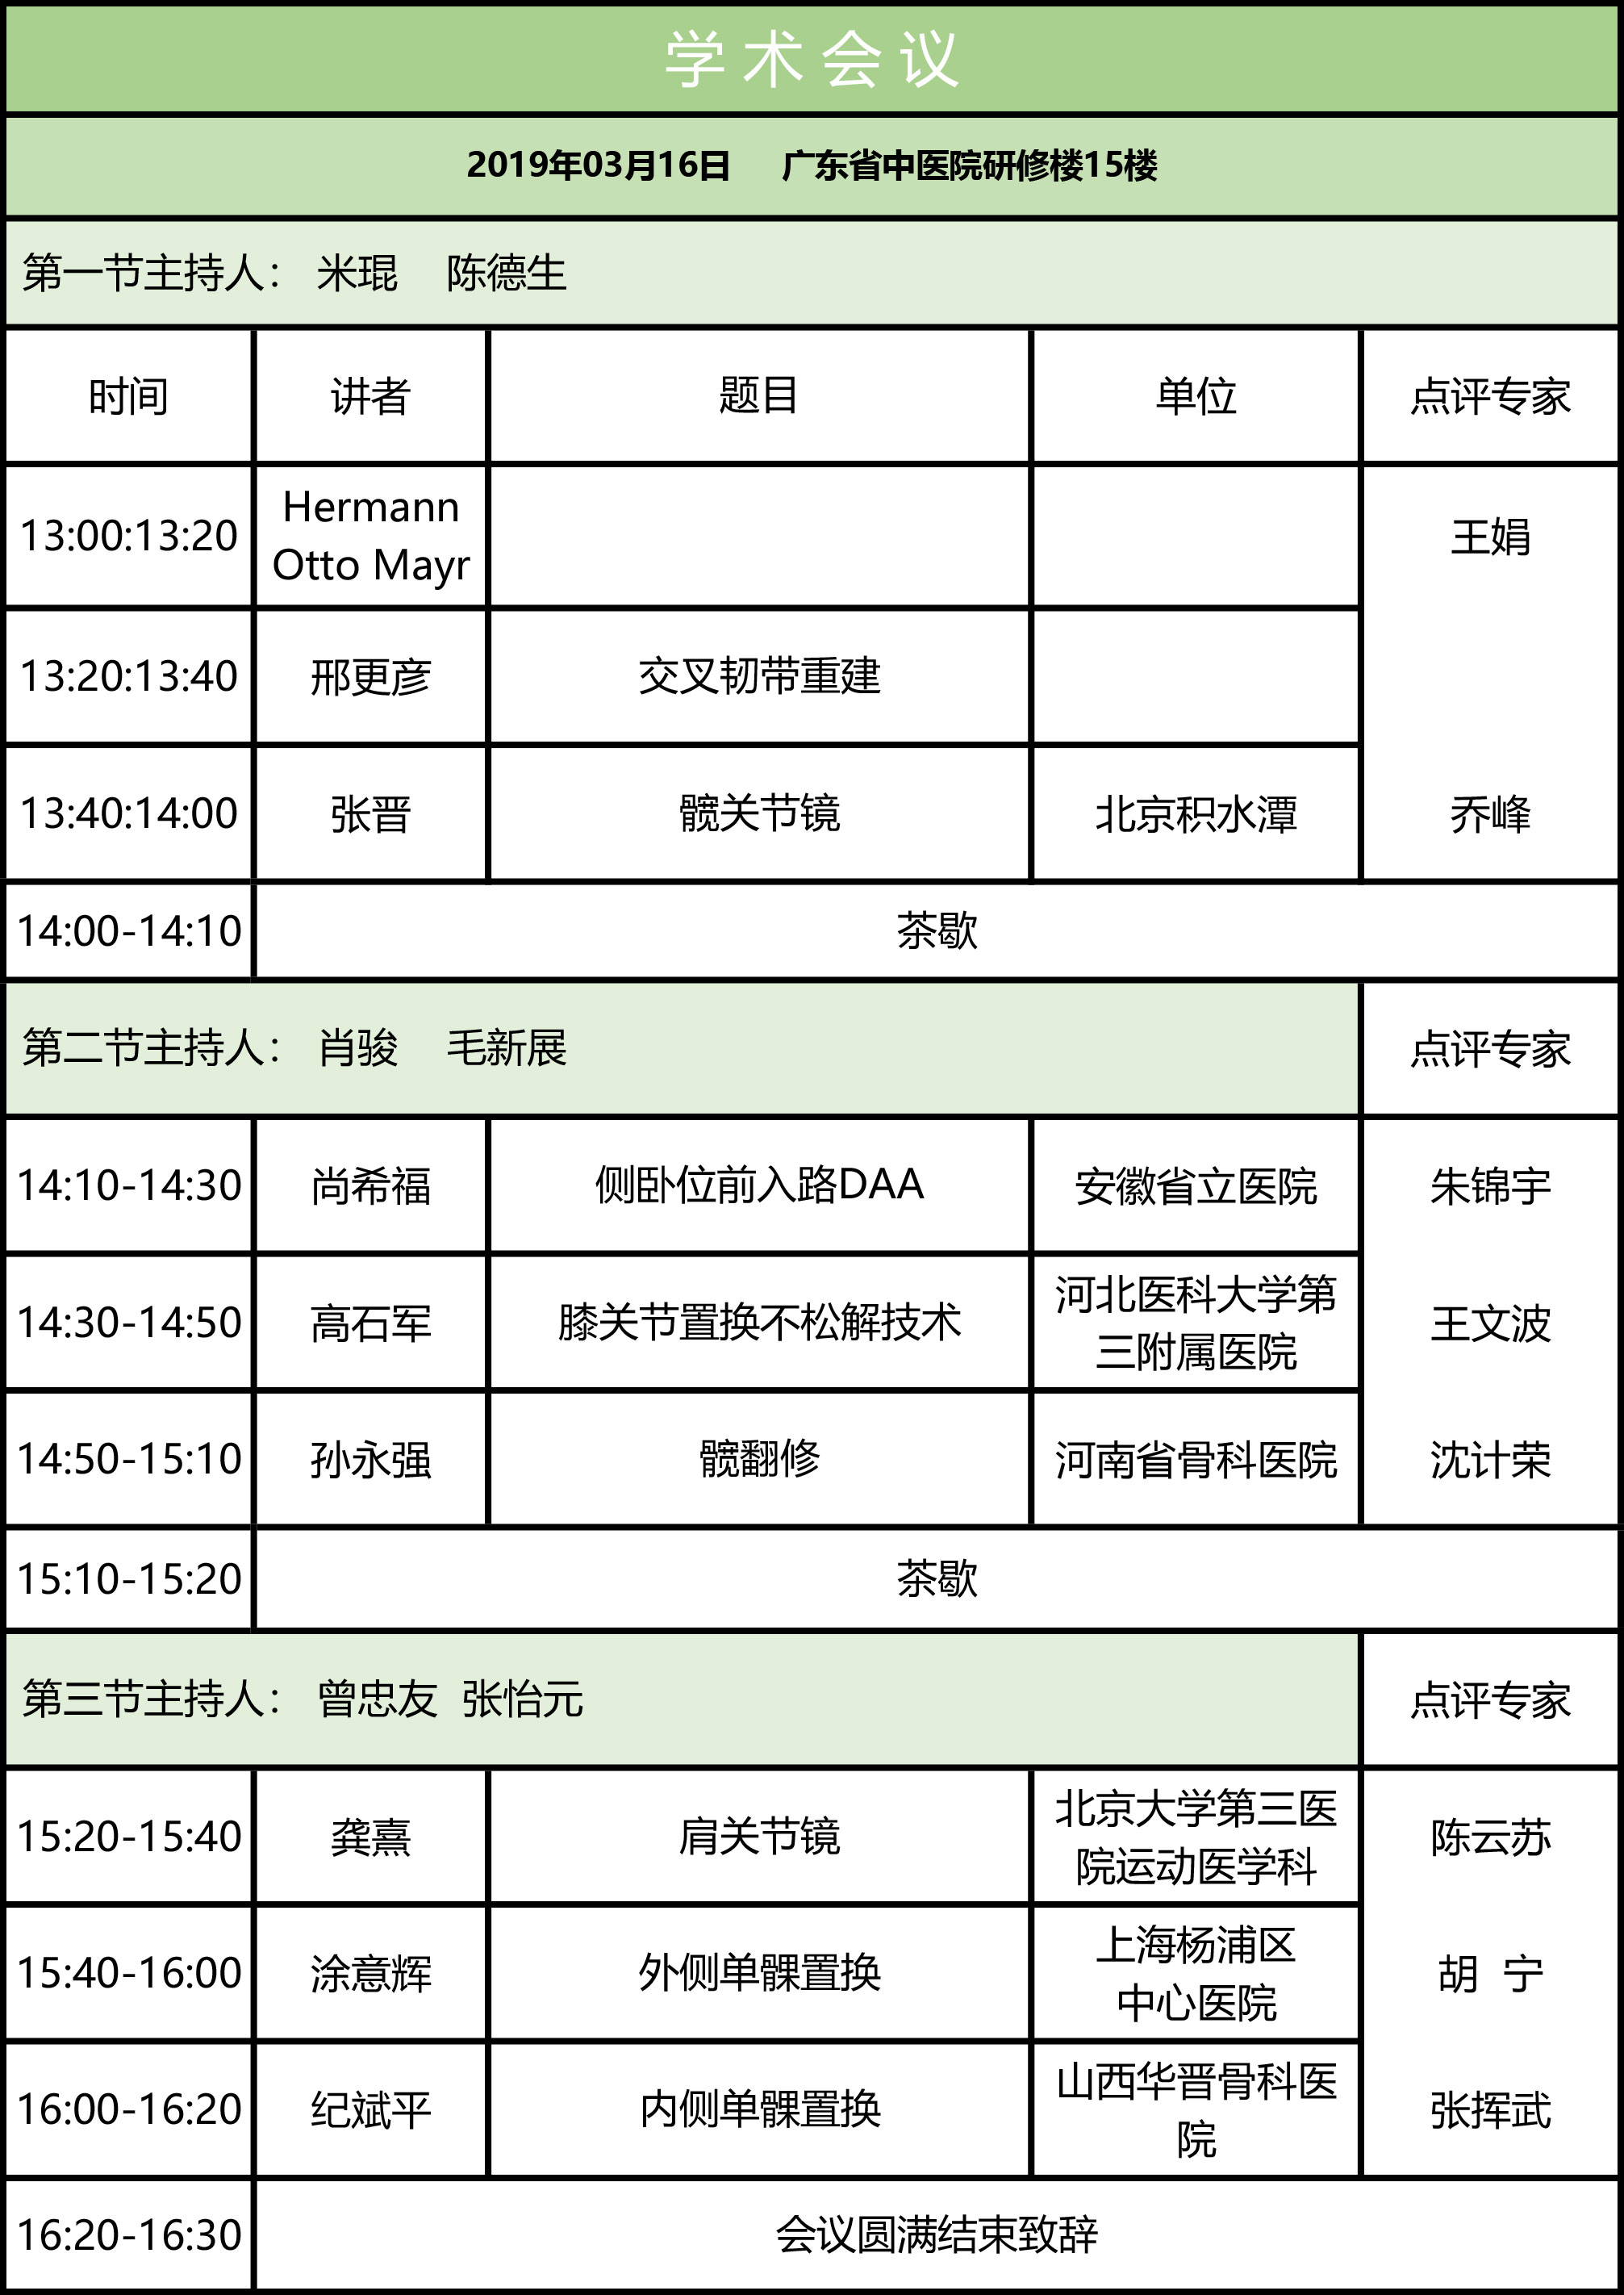 2019中国医学救援协会运动伤害分会关节运动伤害学组成立大会（广州）